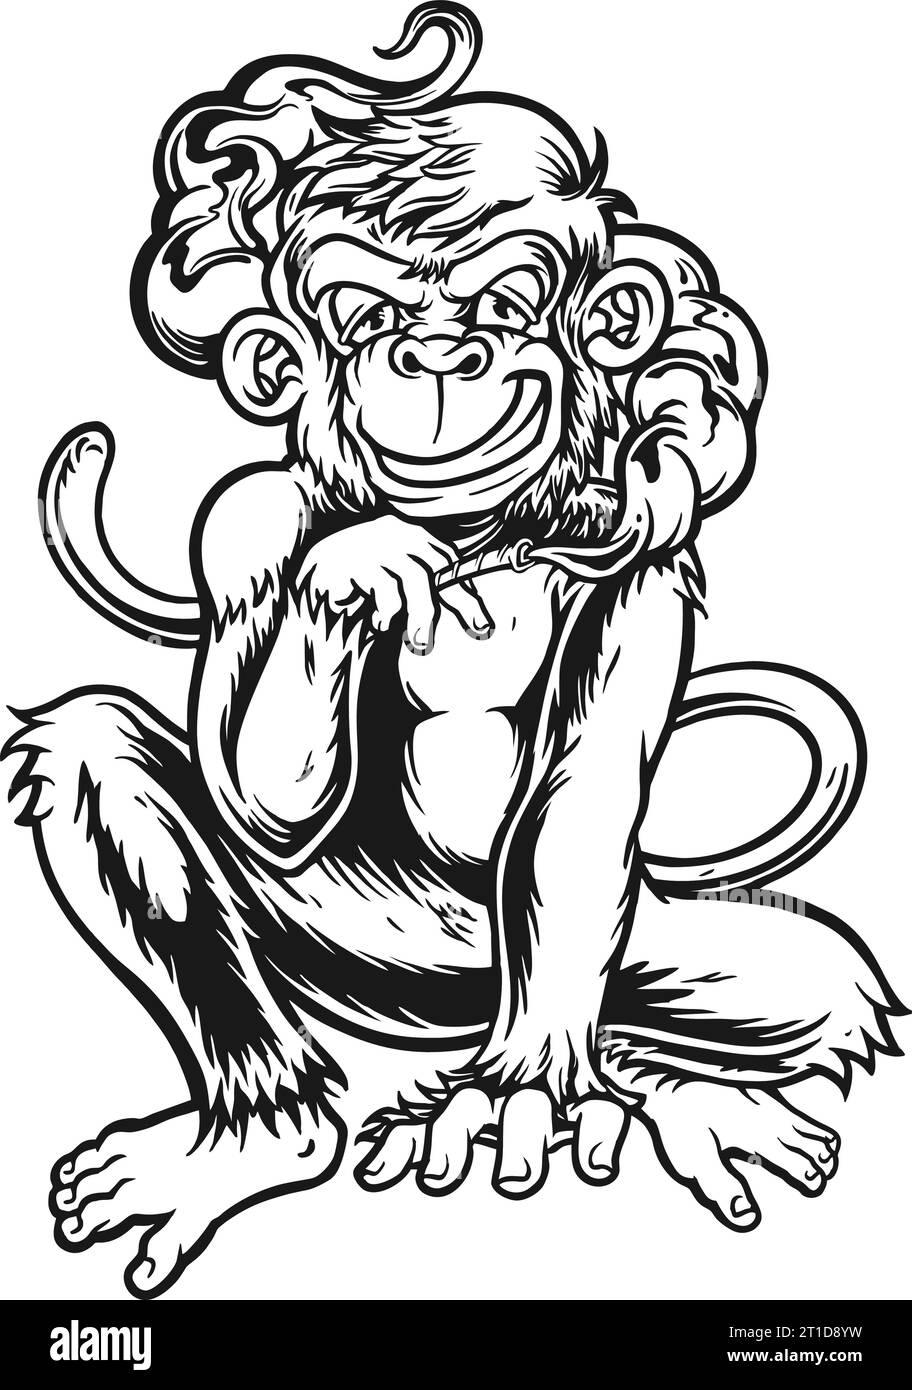 Illustrations vectorielles de contour de chimpanzé comique fumant du cannabis pour votre logo de travail, t-shirt de marchandises, autocollants et dessins d'étiquettes, affiche, carte de voeux Illustration de Vecteur